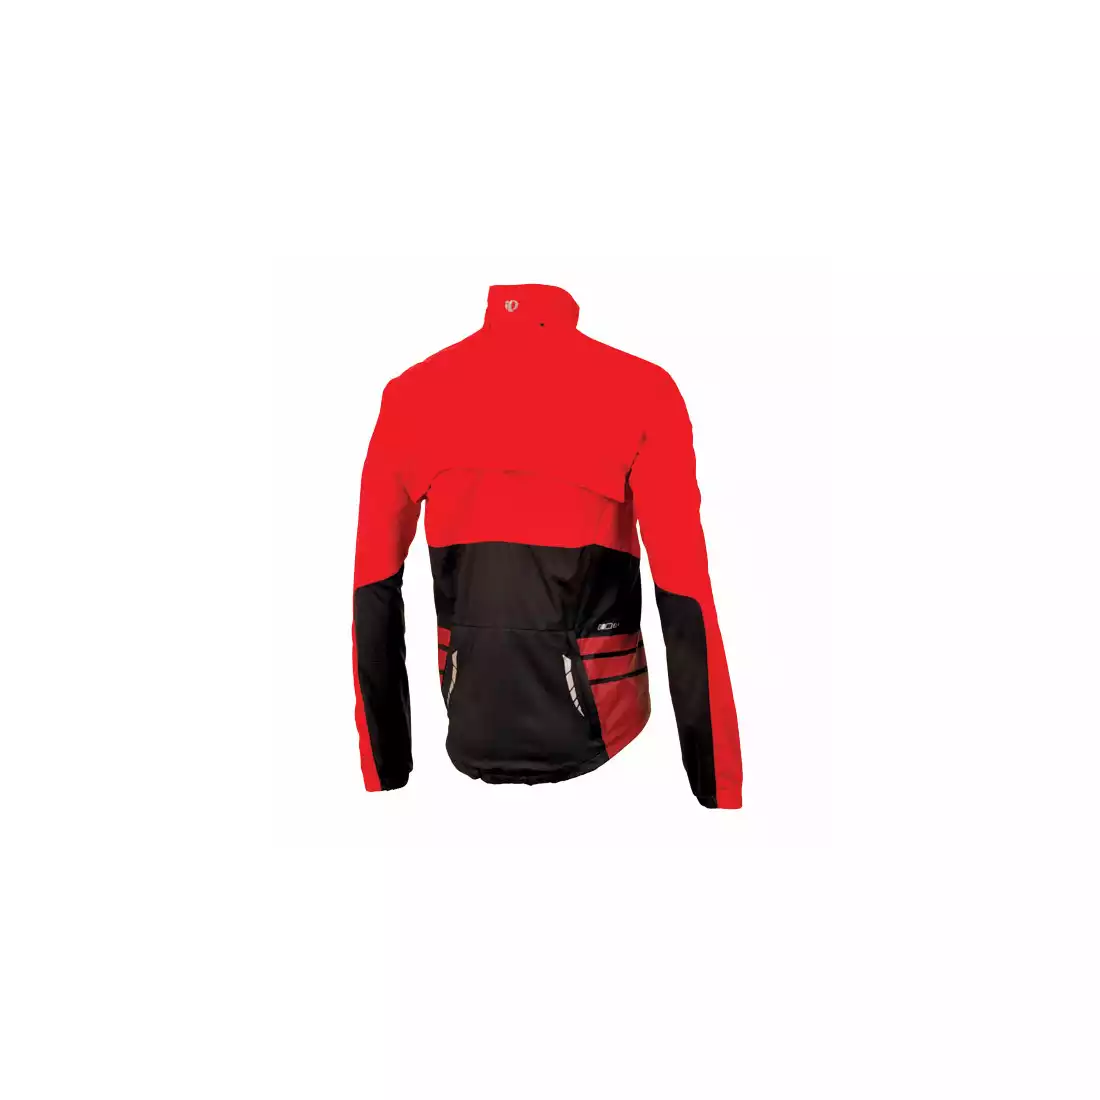 PEARL IZUMI - ELITE Barrier Convertible Jacket 11131314-3DM - kurtko-kamizelka rowerowa, kolor: Czerwony